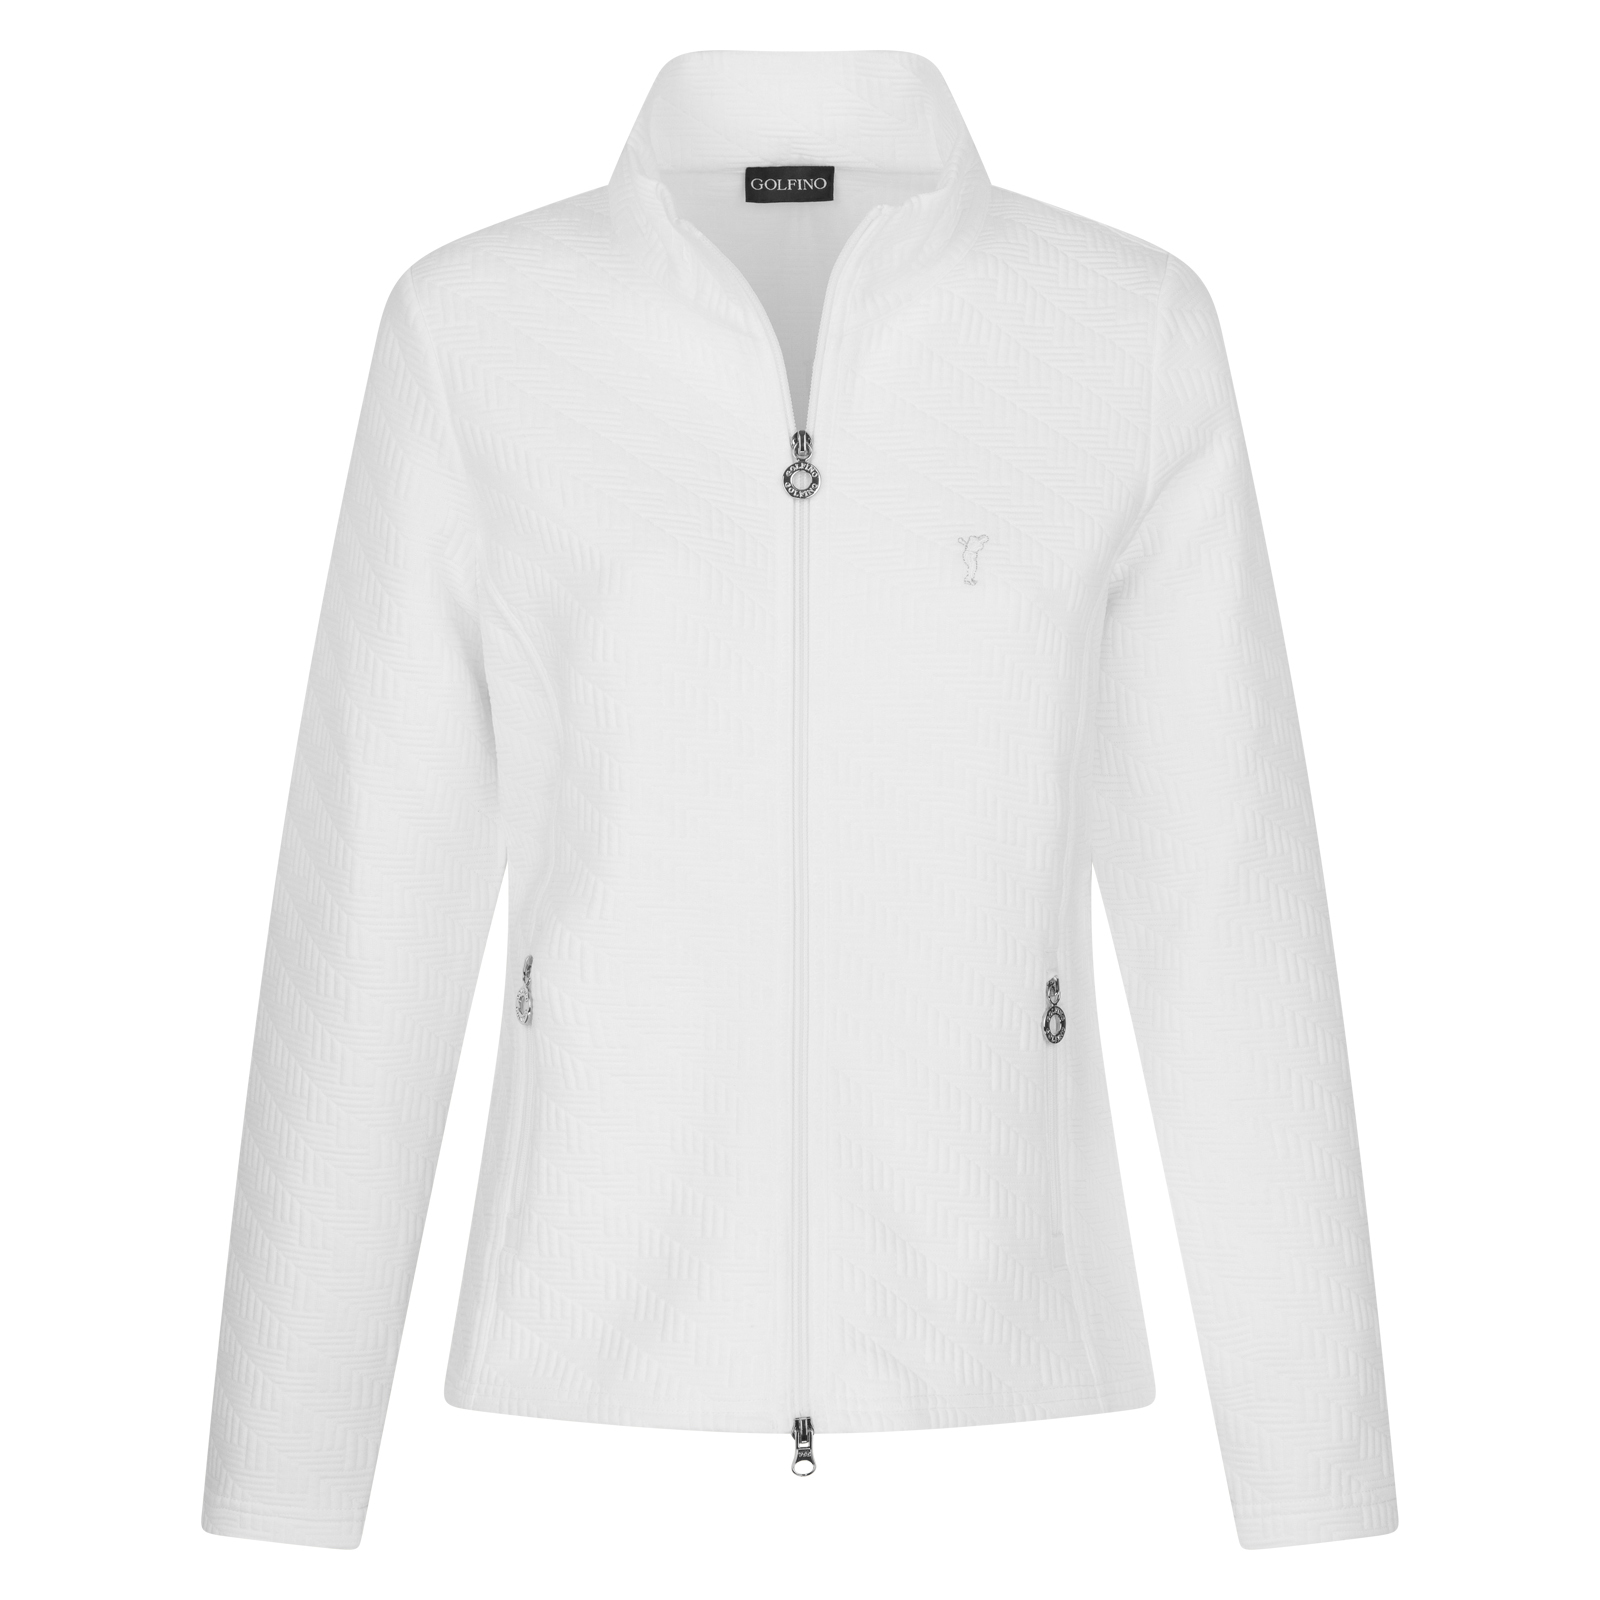 Kälteabweisende Damen Golf Jacke mit strukturierter Oberfläche